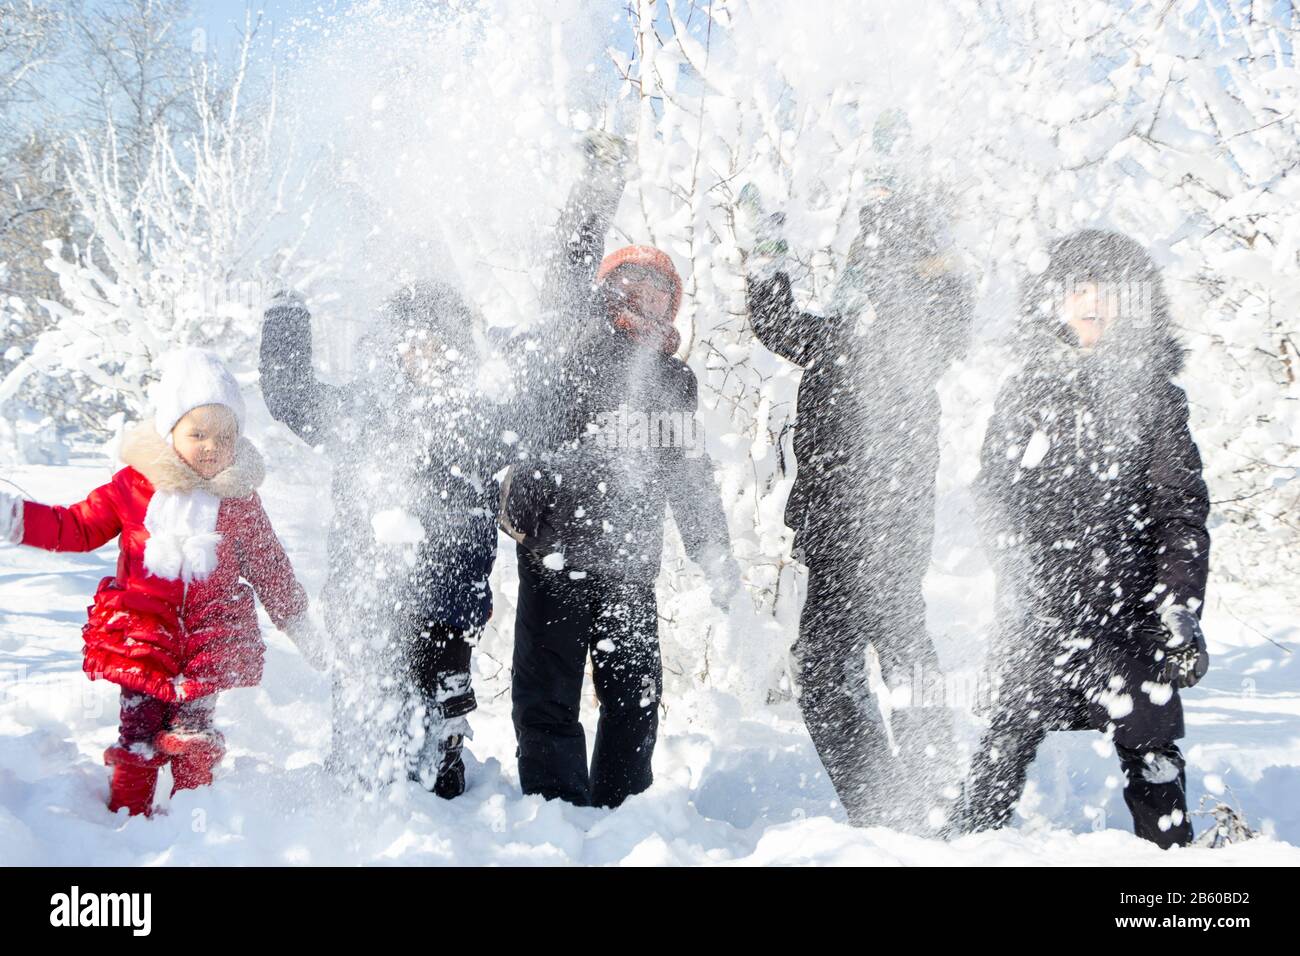 Un gruppo di bambini getta la neve e godersi i giochi invernali in aria fresca e gelida. Alberi coperti di neve dietro di loro. Meravigliosa vacanza invernale. Sano Foto Stock